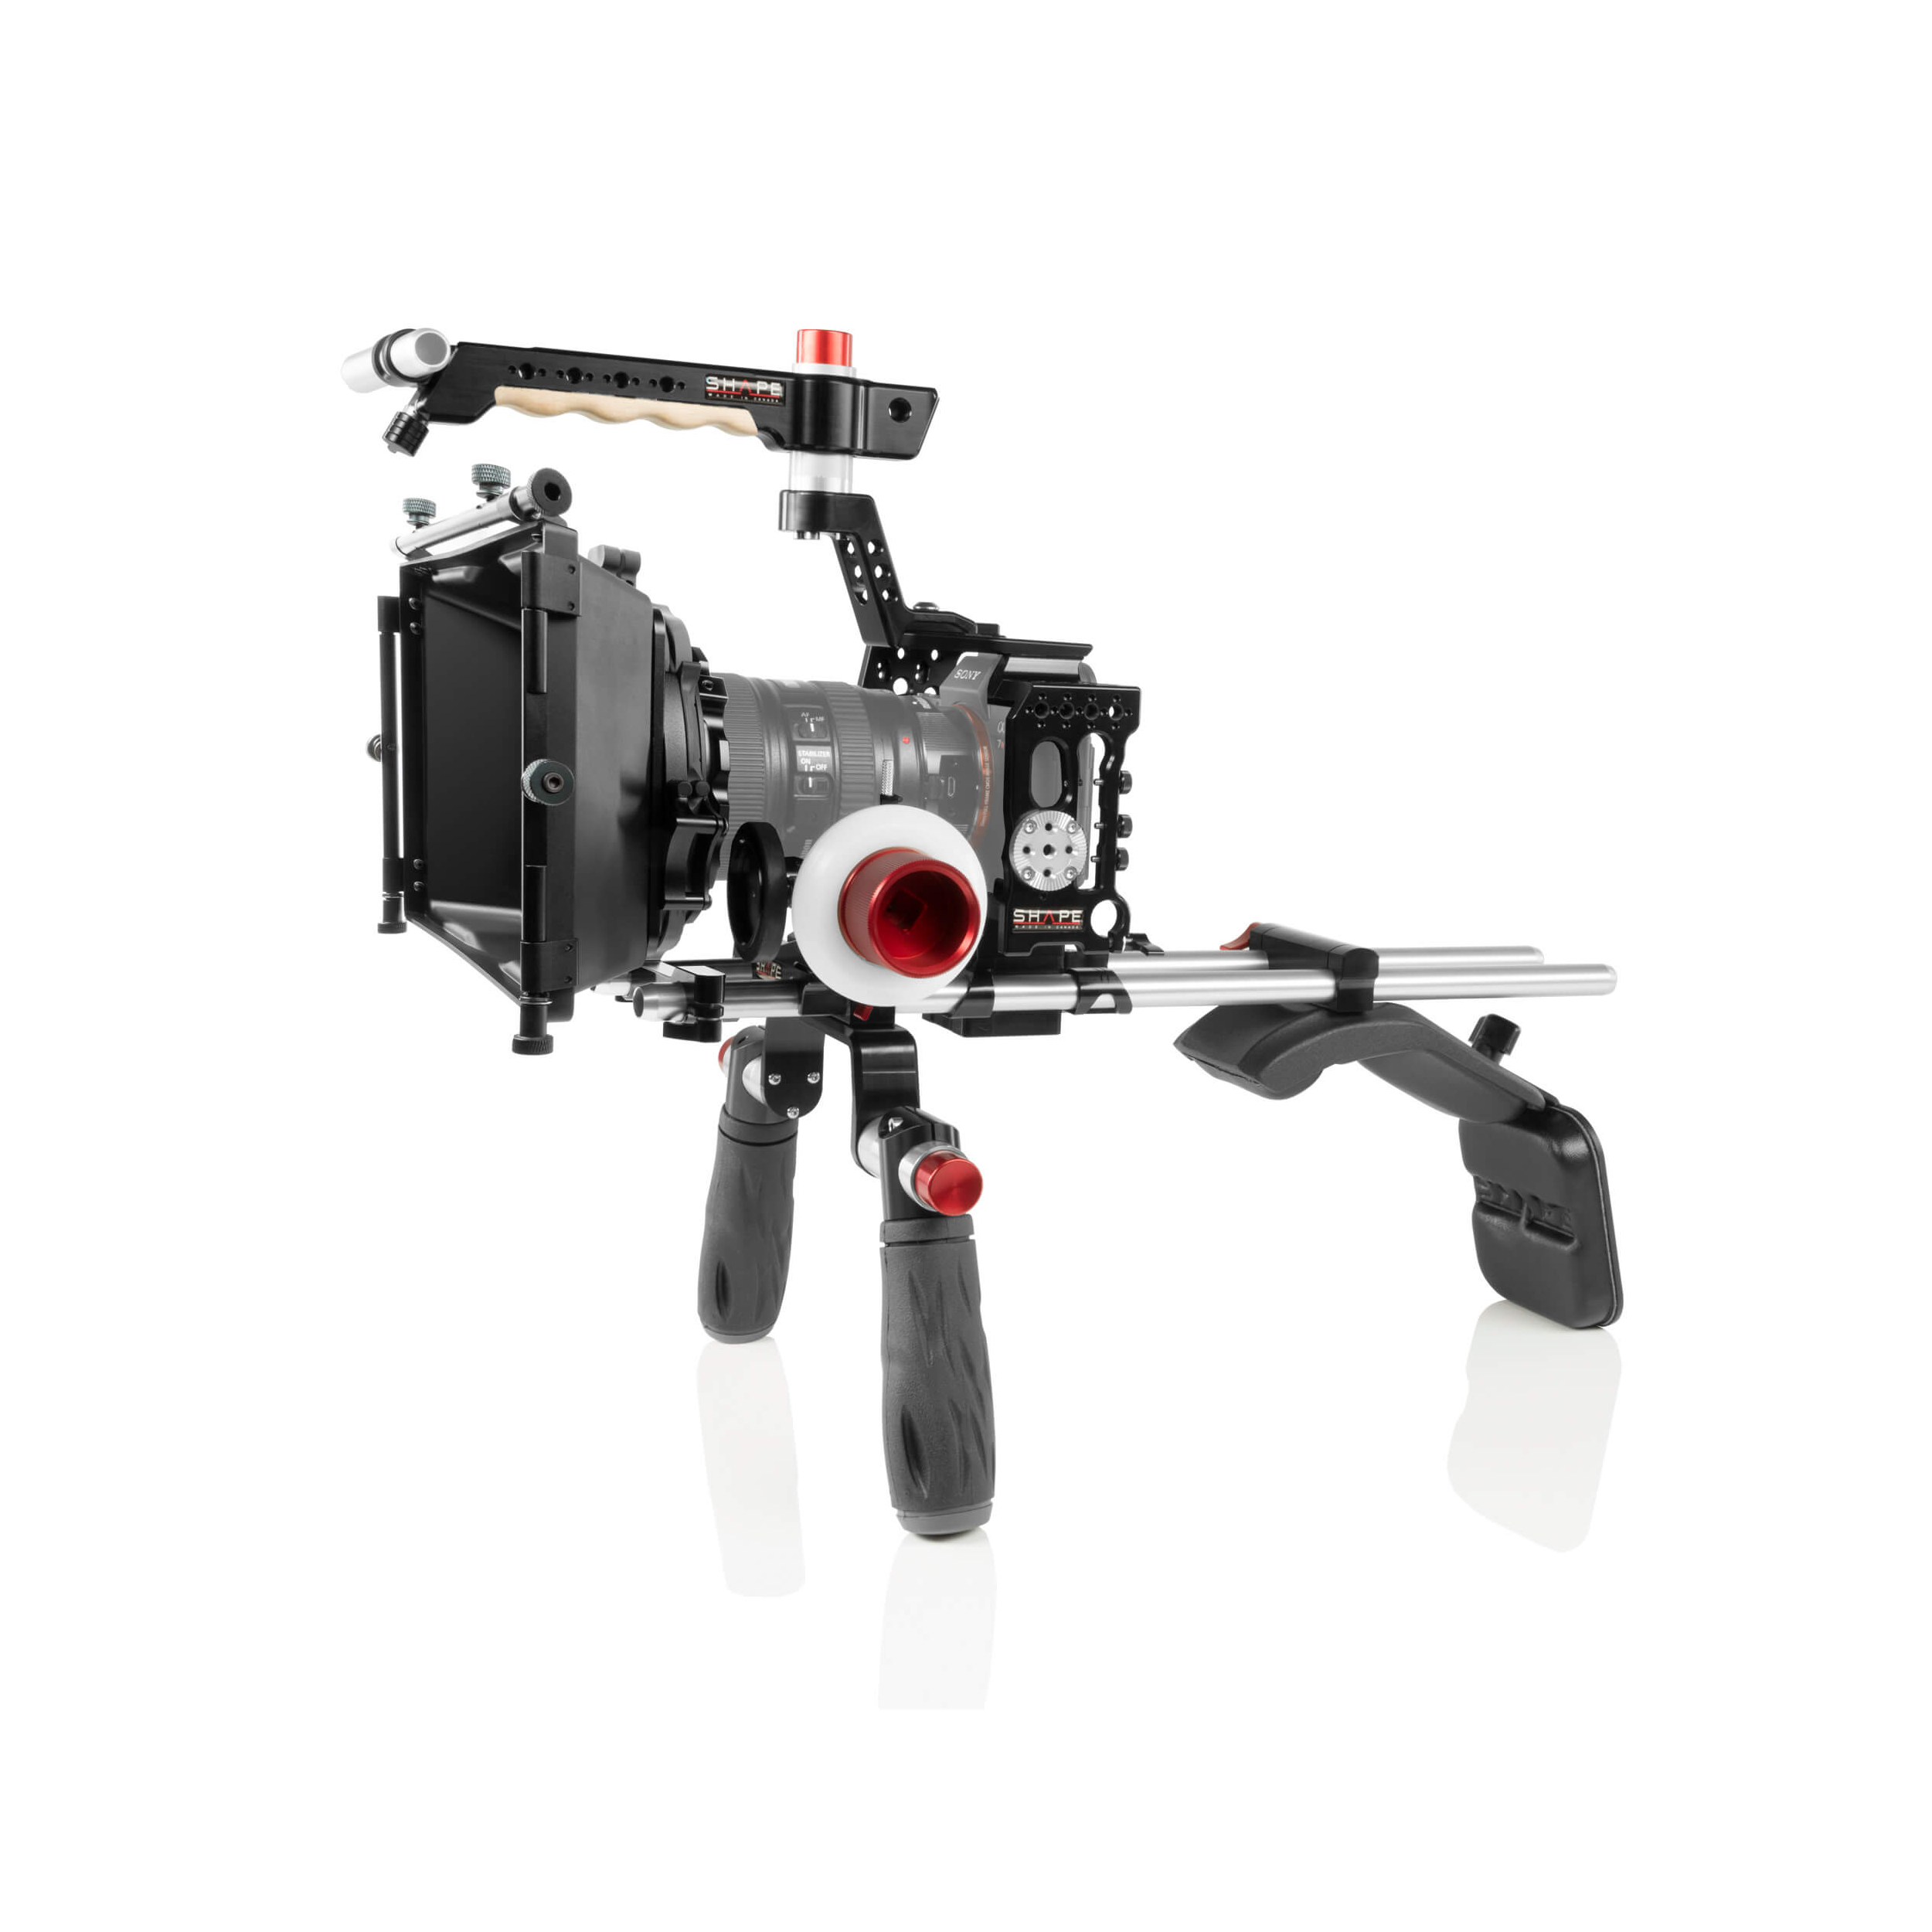 Kit de montage d'épaule de forme avec boîte mate et suivez la mise au point pour Sony A7R III / A7 III Camera